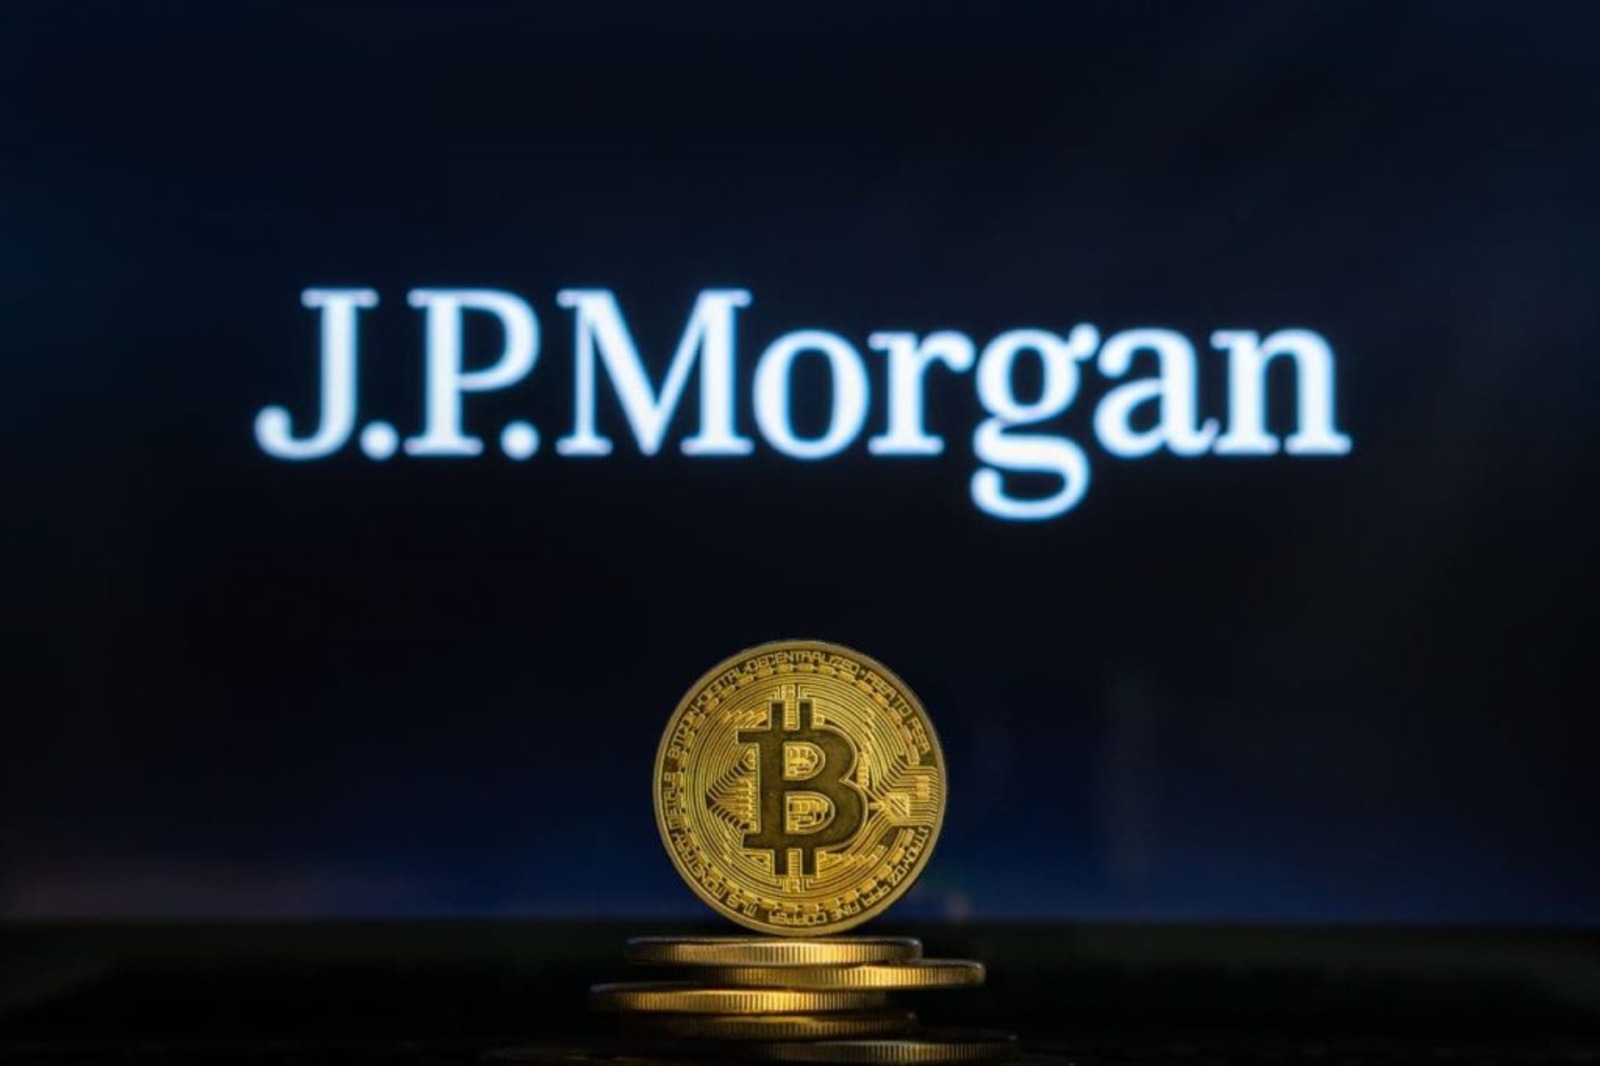 Bitcoin Could Crash to $13K, Warns JPMorgan